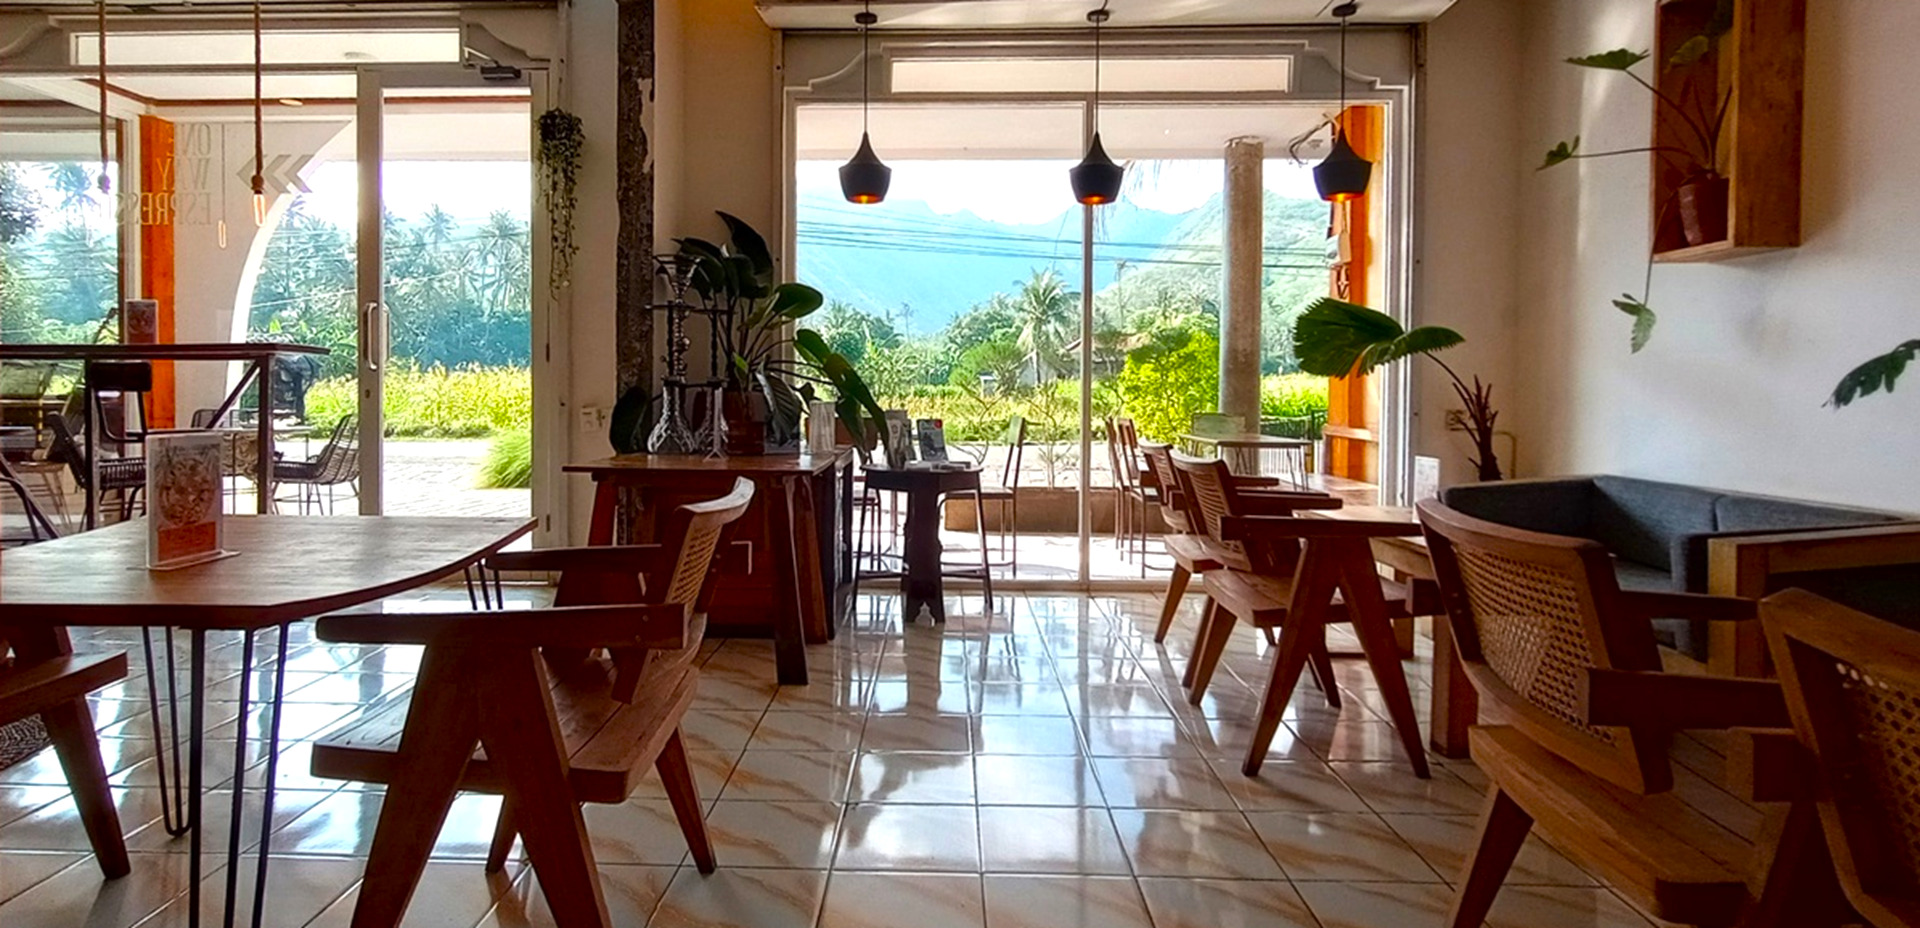 【アメッド】バリ島の大自然を感じる、おしゃれ隠れ家カフェ2選